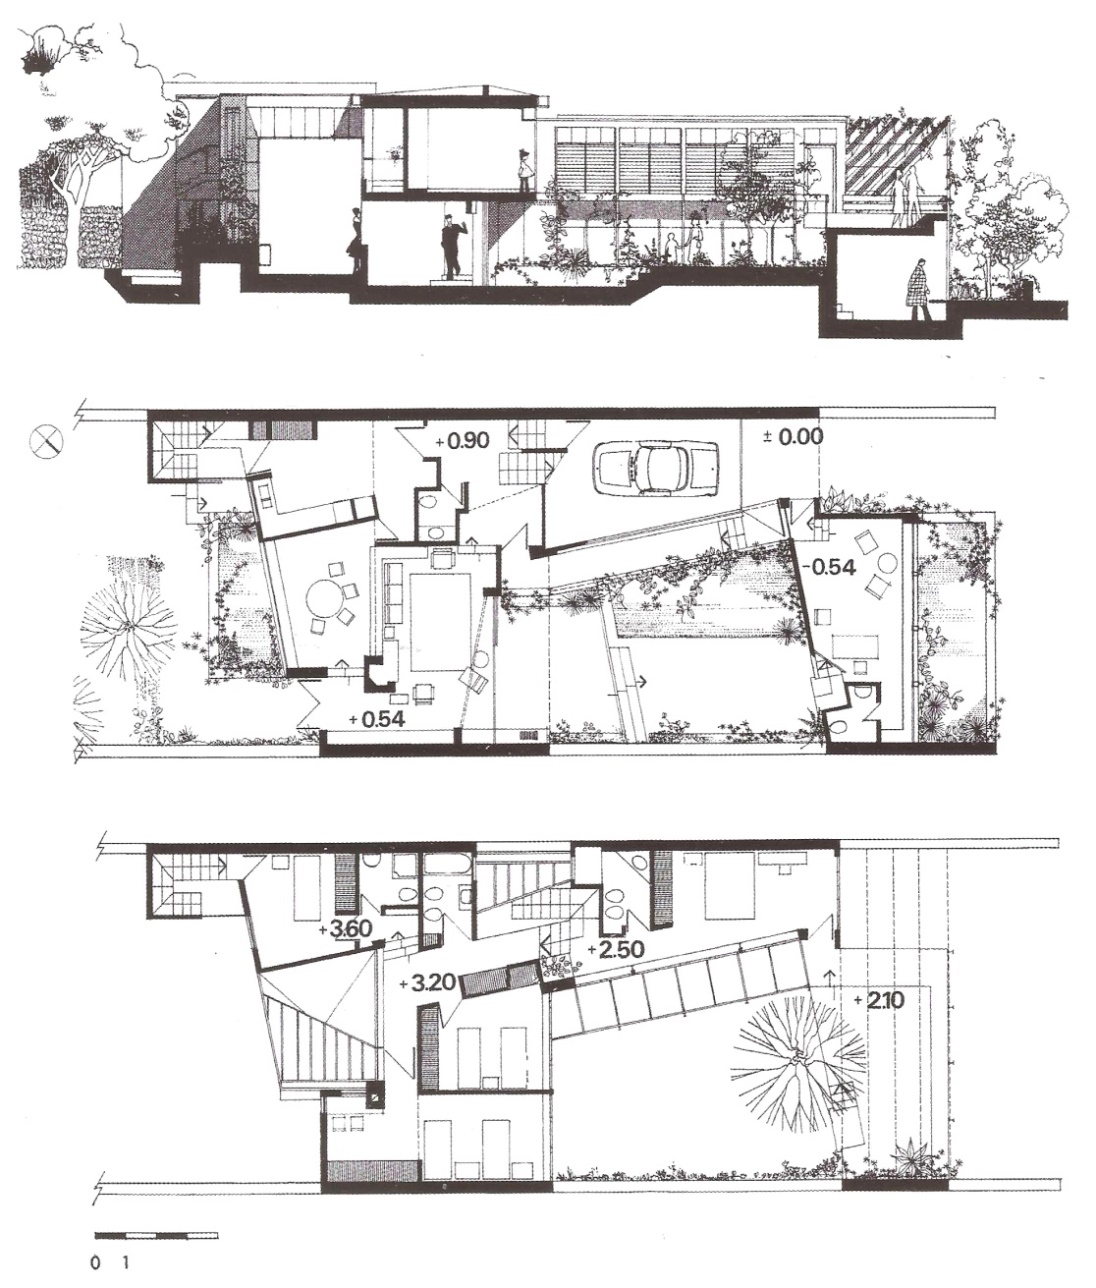 Planta y
cortes de la vivienda Yurievich de los arquitectos C. E. Lenci, Roberto Kuri y
J. M. Escudero en 1969, Mar del Plata 